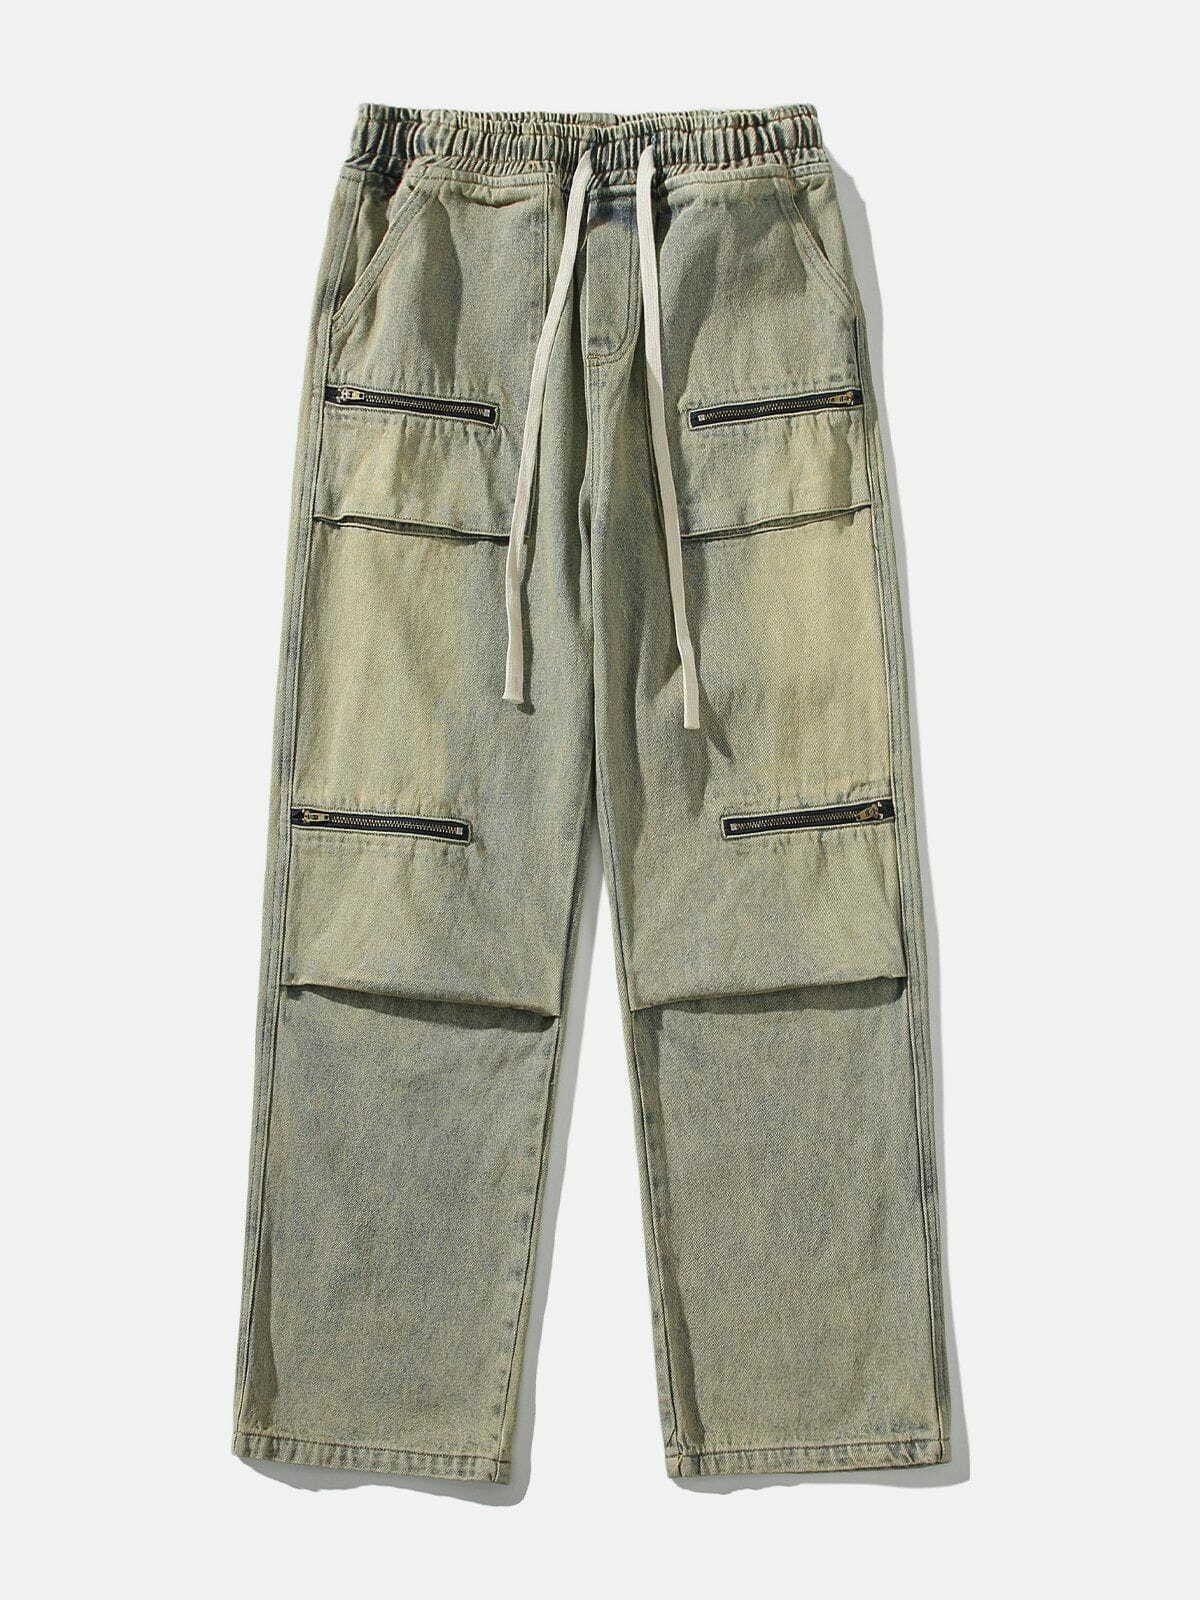 revolutionary drawstring jeans zip pocket detail 2299